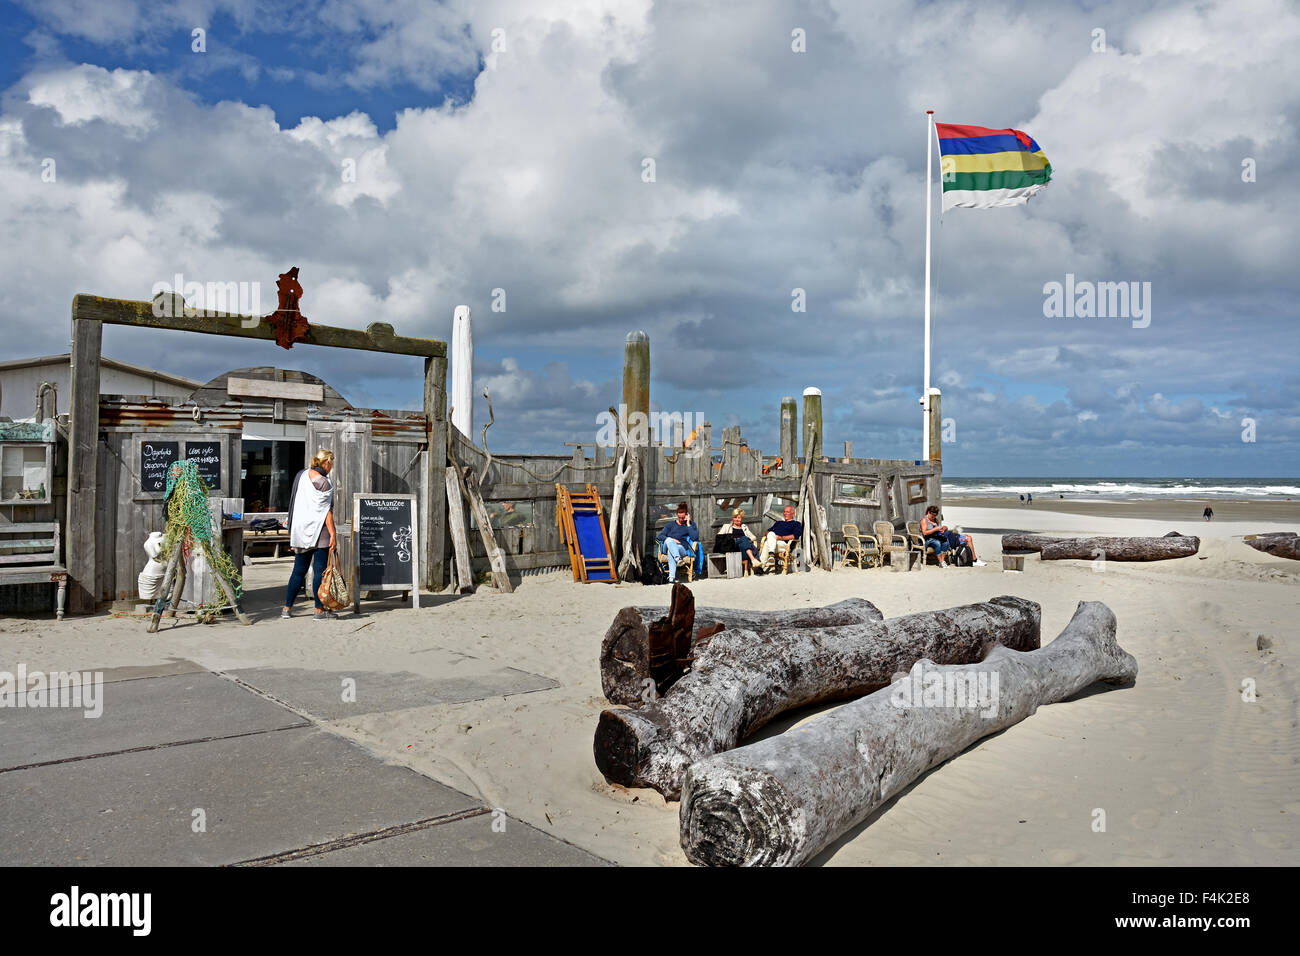 Paviljoen West Aan Zee ( Nort Sea ) Terschelling beach cafe bar pub  restaurant Netherlands Stock Photo - Alamy